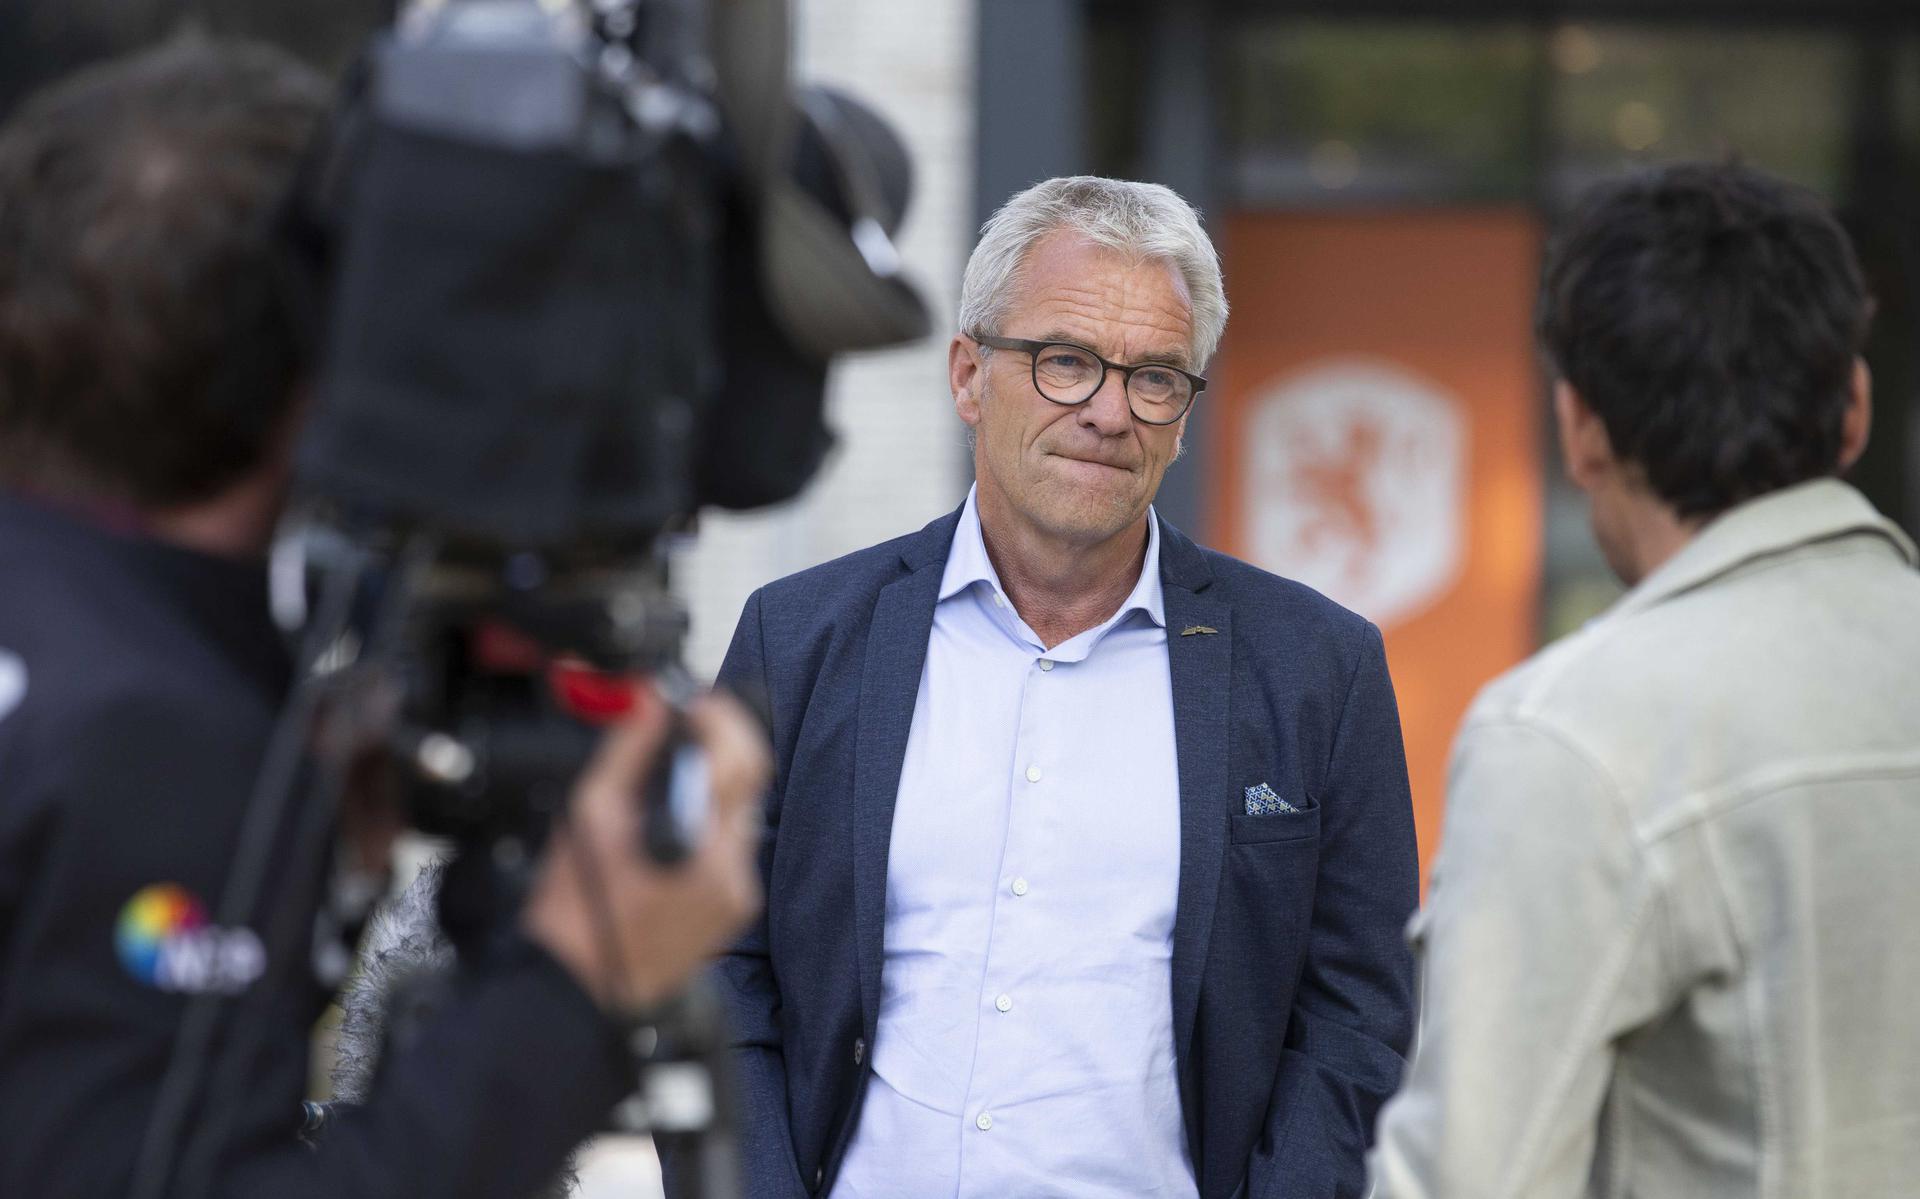 Directeur Eric Gudde  van de KNVB legt de beslissing uit. 